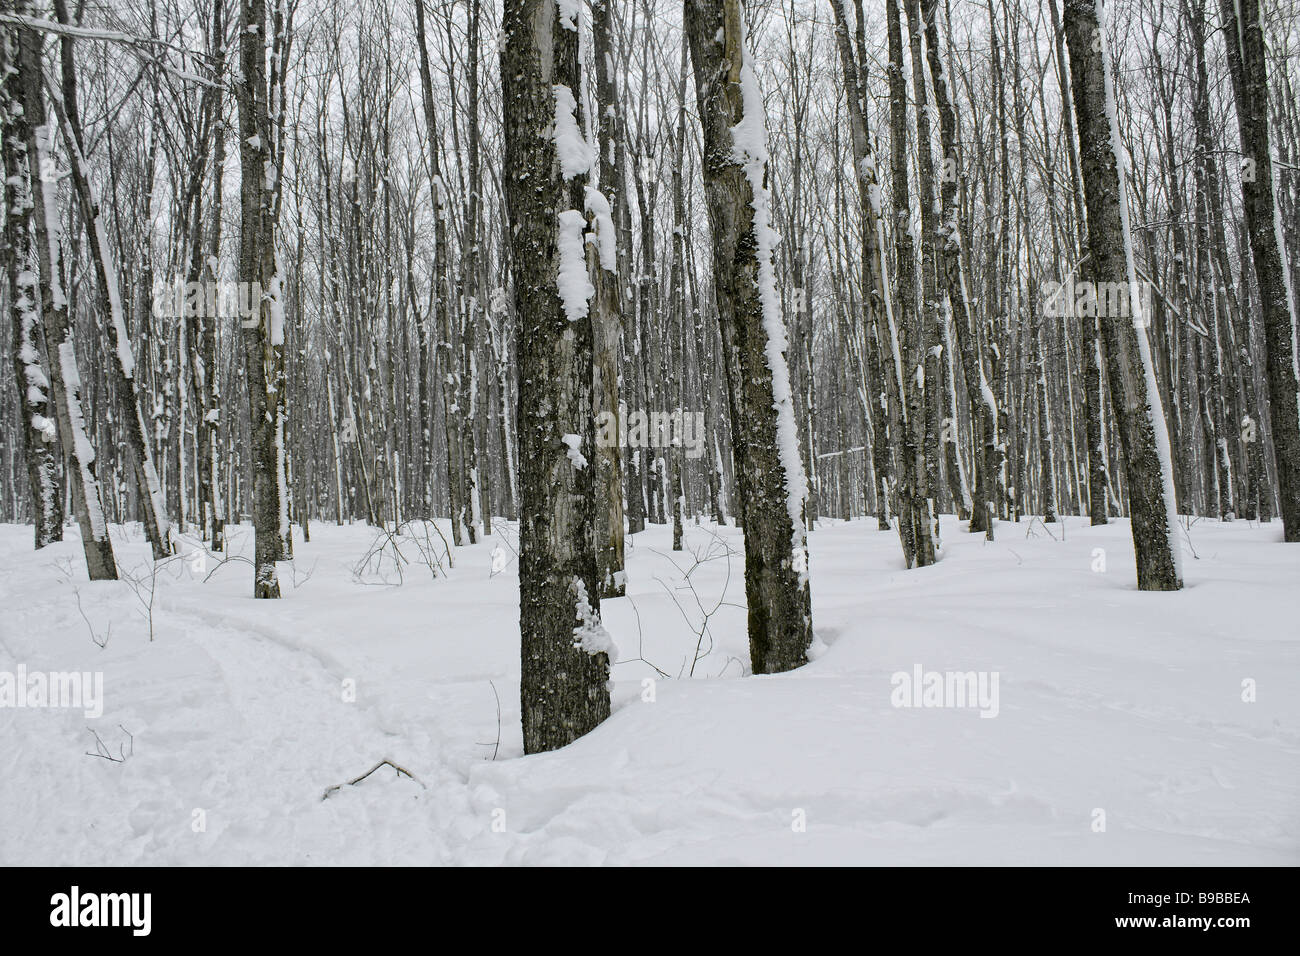 Hiver forêt enneigée arbres couverts dérives chutes de neige empreintes de minimalisme nminimaliste photos aux États-Unis États-Unis Amérique rurale minimal nature artistique haute résolution Banque D'Images